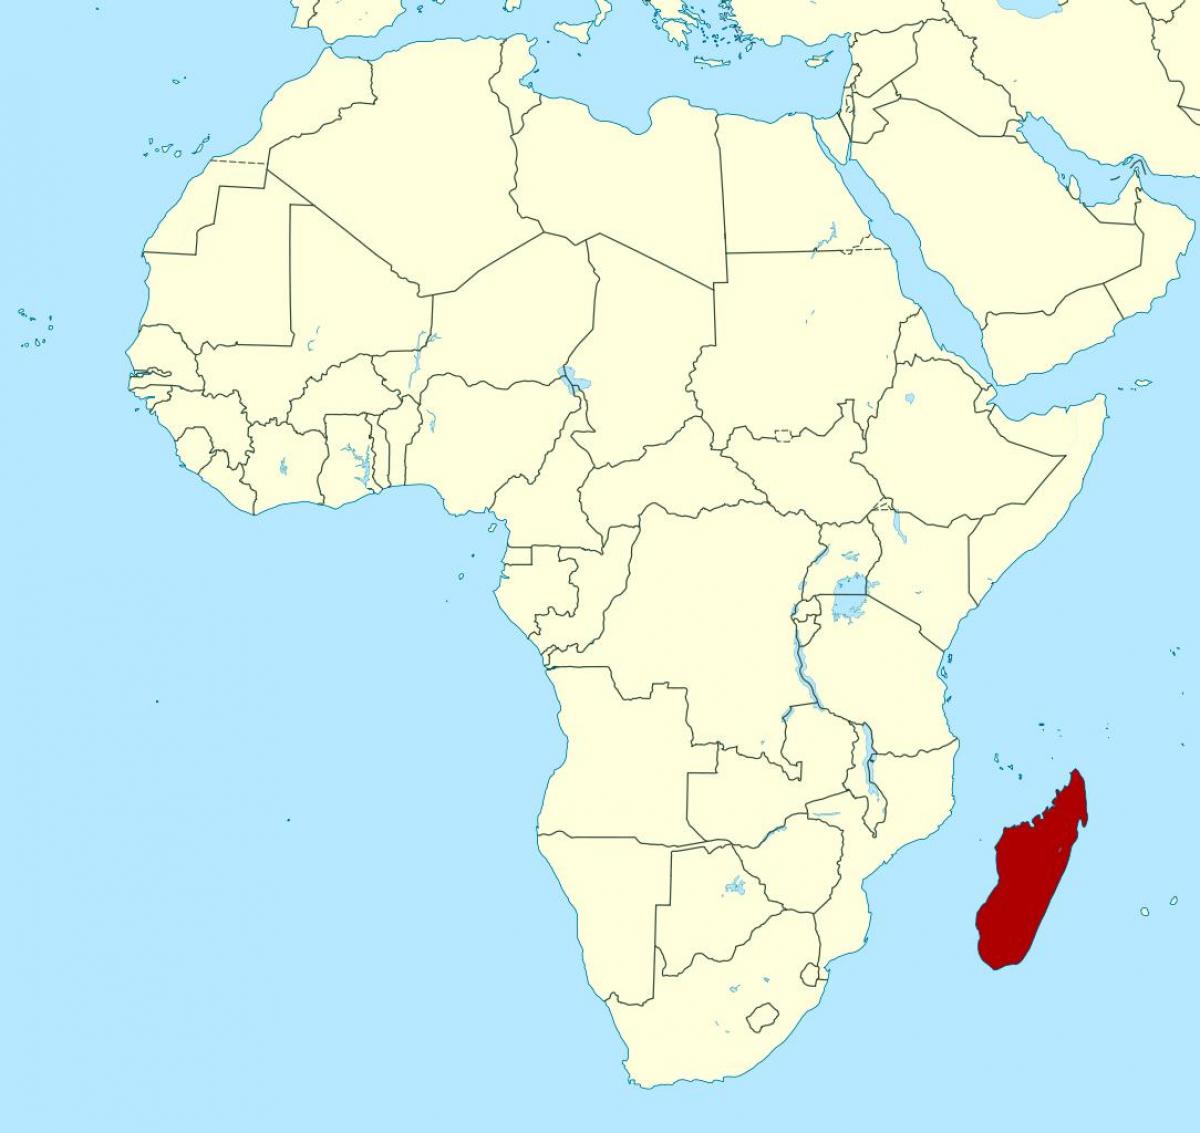 มาดากัสกา name อยู่บนแผนที่แอฟริกา